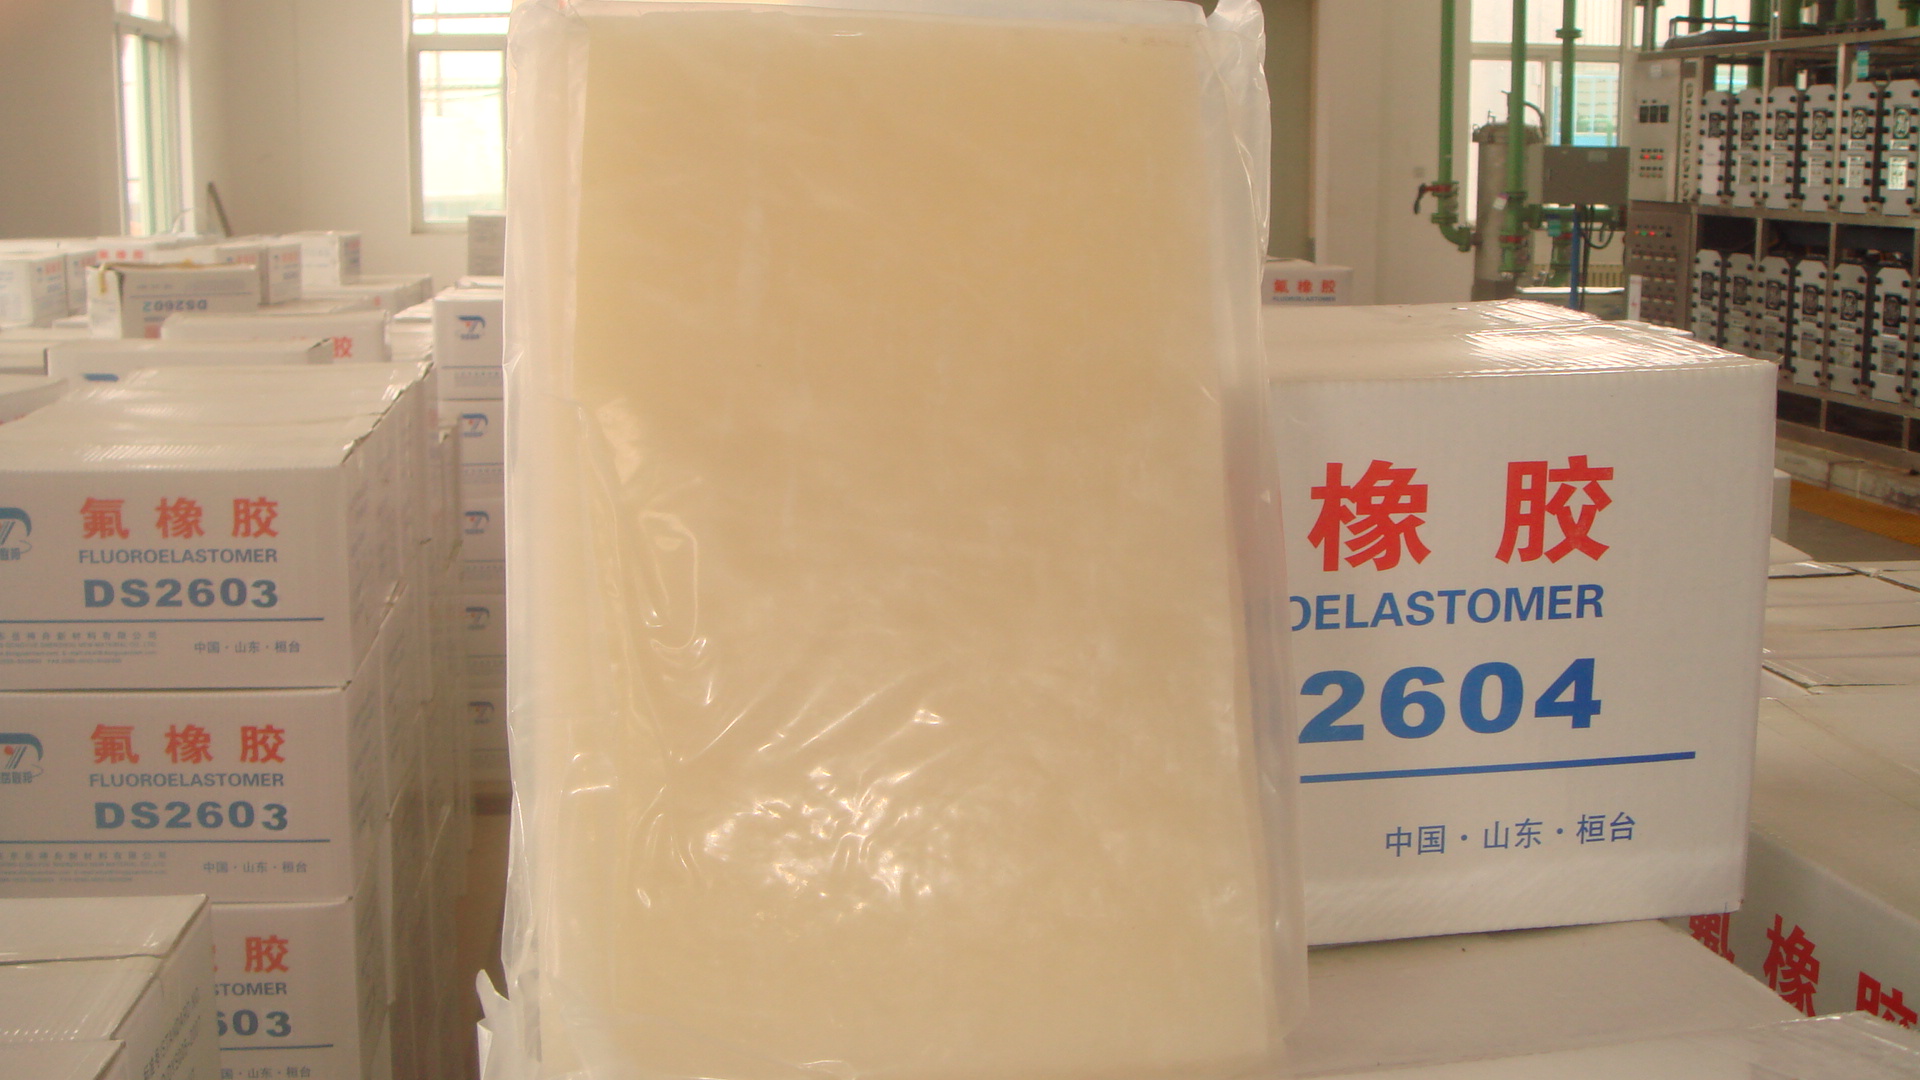 Fluoroelastomer Copolymer Gum (FKM)